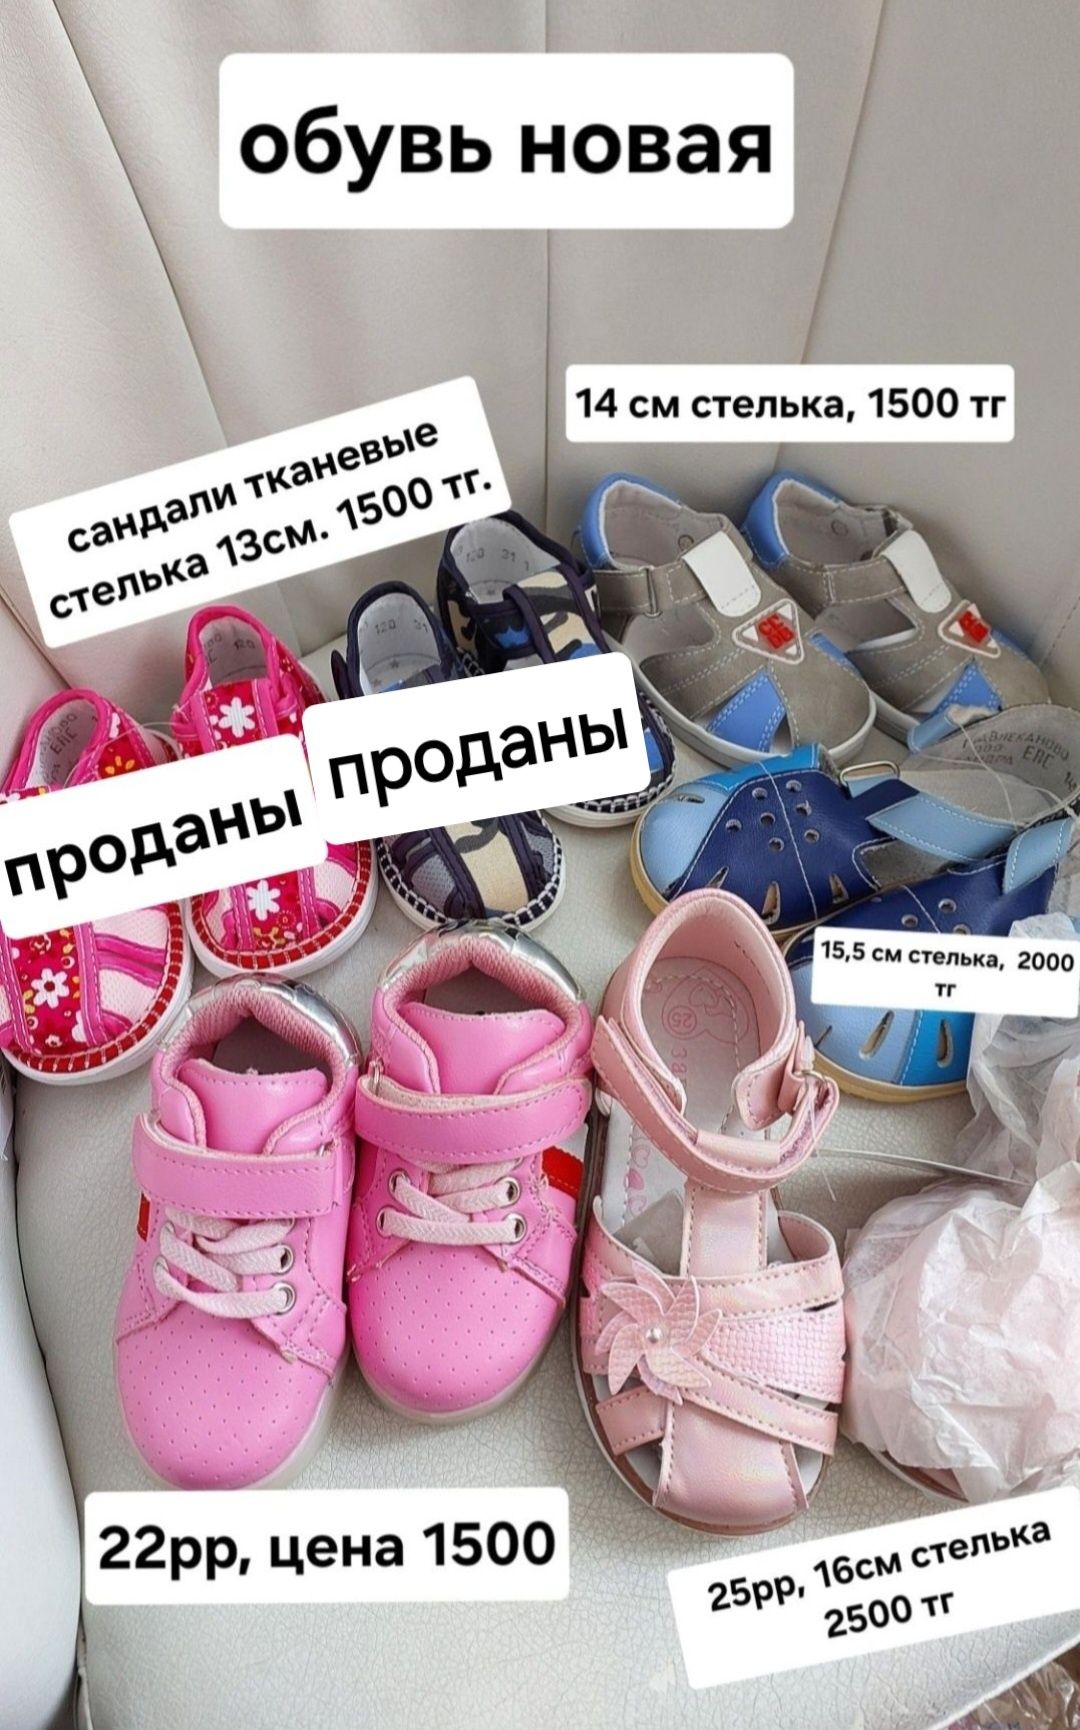 Продам обувь детскую( ботинки, сандали)